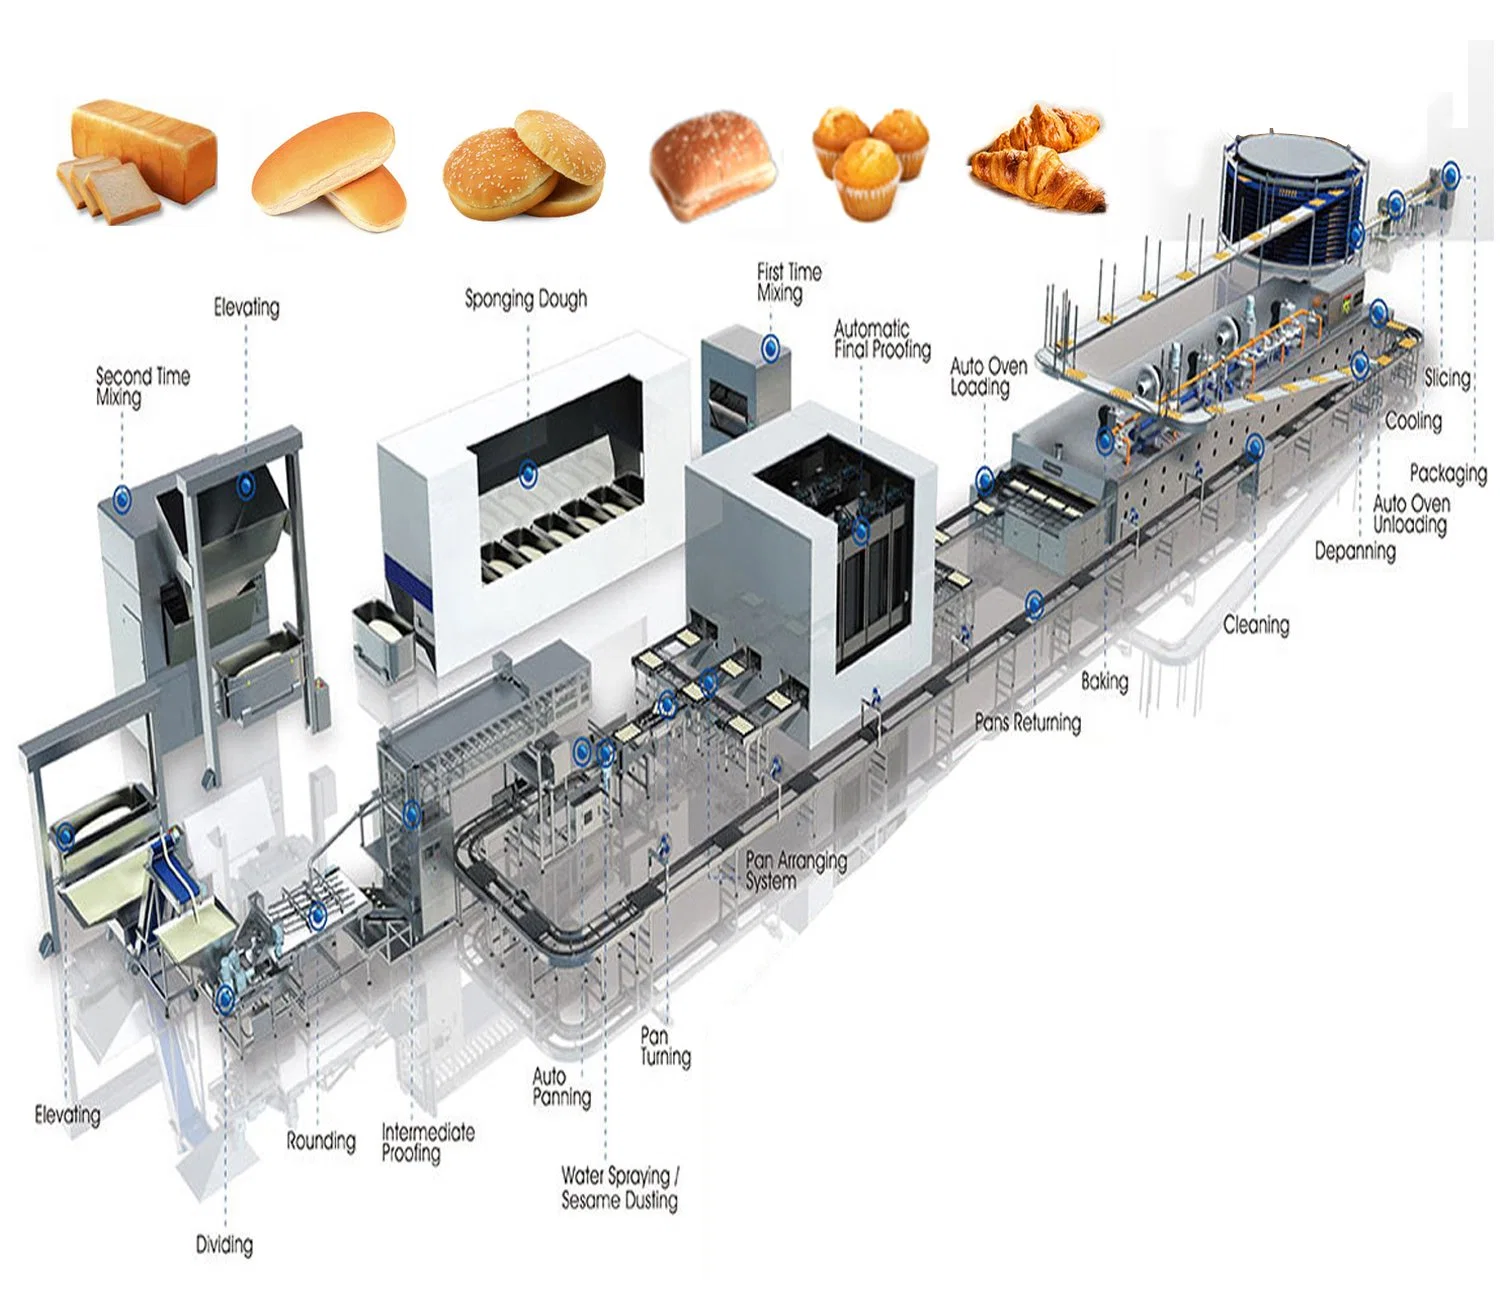 كامل التلقائي ماكينة الخباطة الصناعية آلة الخبز الطعام تجهيز سعر لطهو الخبز المحمص الصبابي